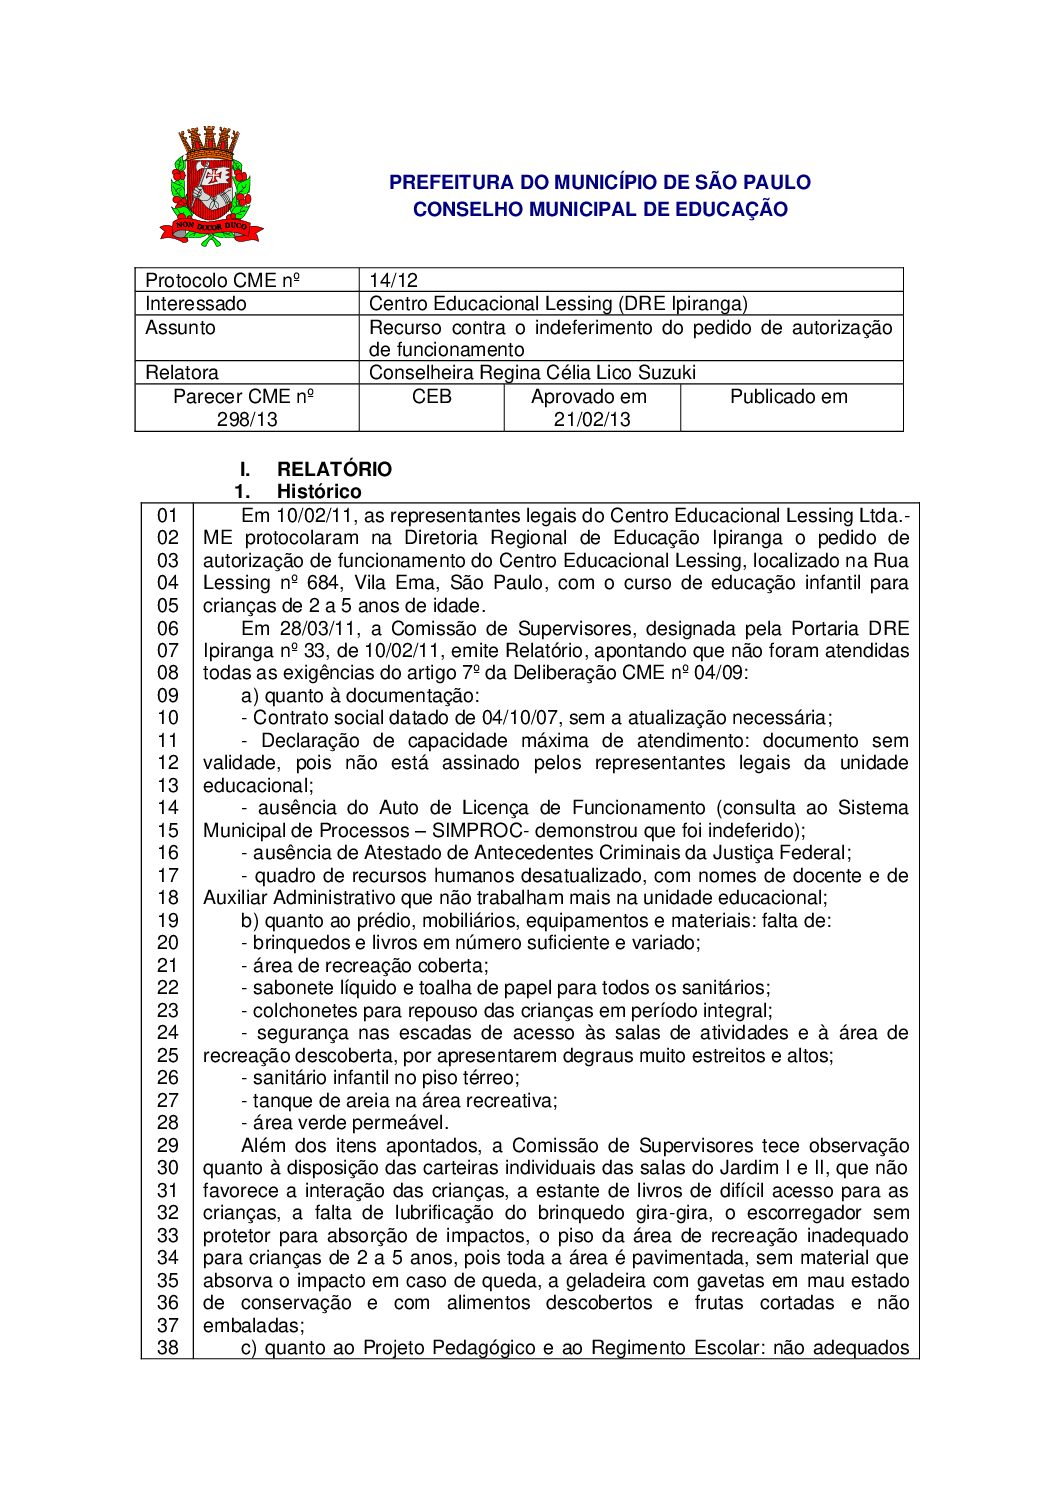 Parecer CME nº 298/2013 - Centro Educacional Lessing (DRE Ipiranga) - Recurso contra o indeferimento do pedido de autorização de funcionamento 